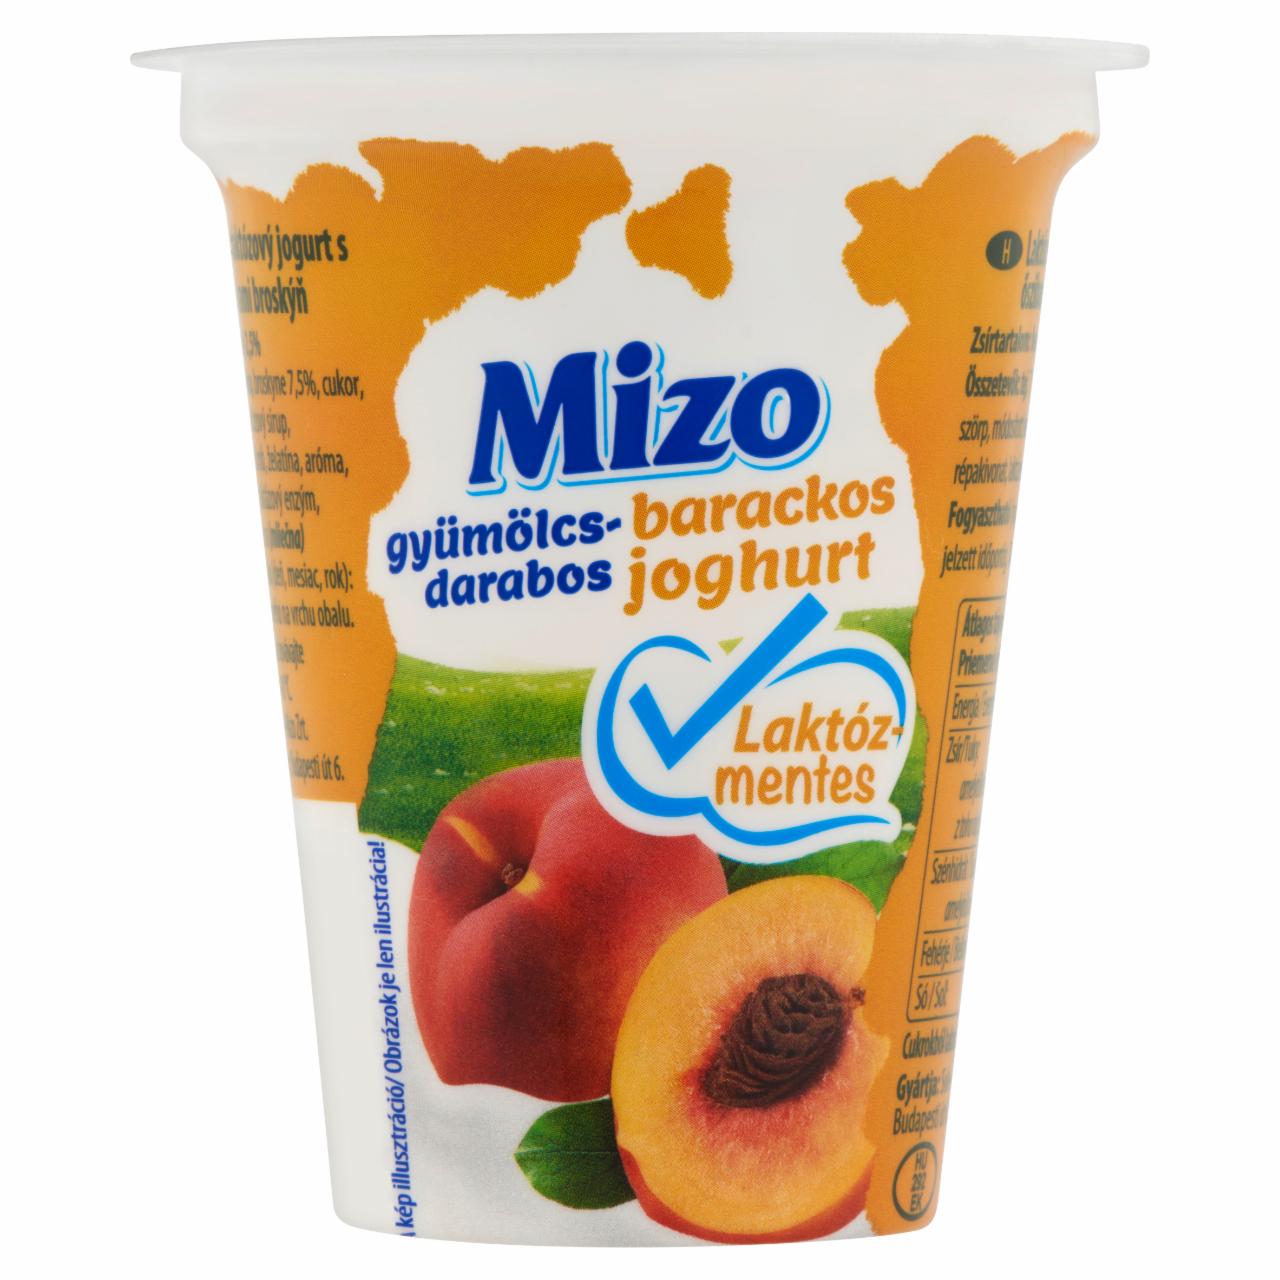 Képek - Mizo laktózmentes gyümölcsdarabos barackos joghurt 150 g